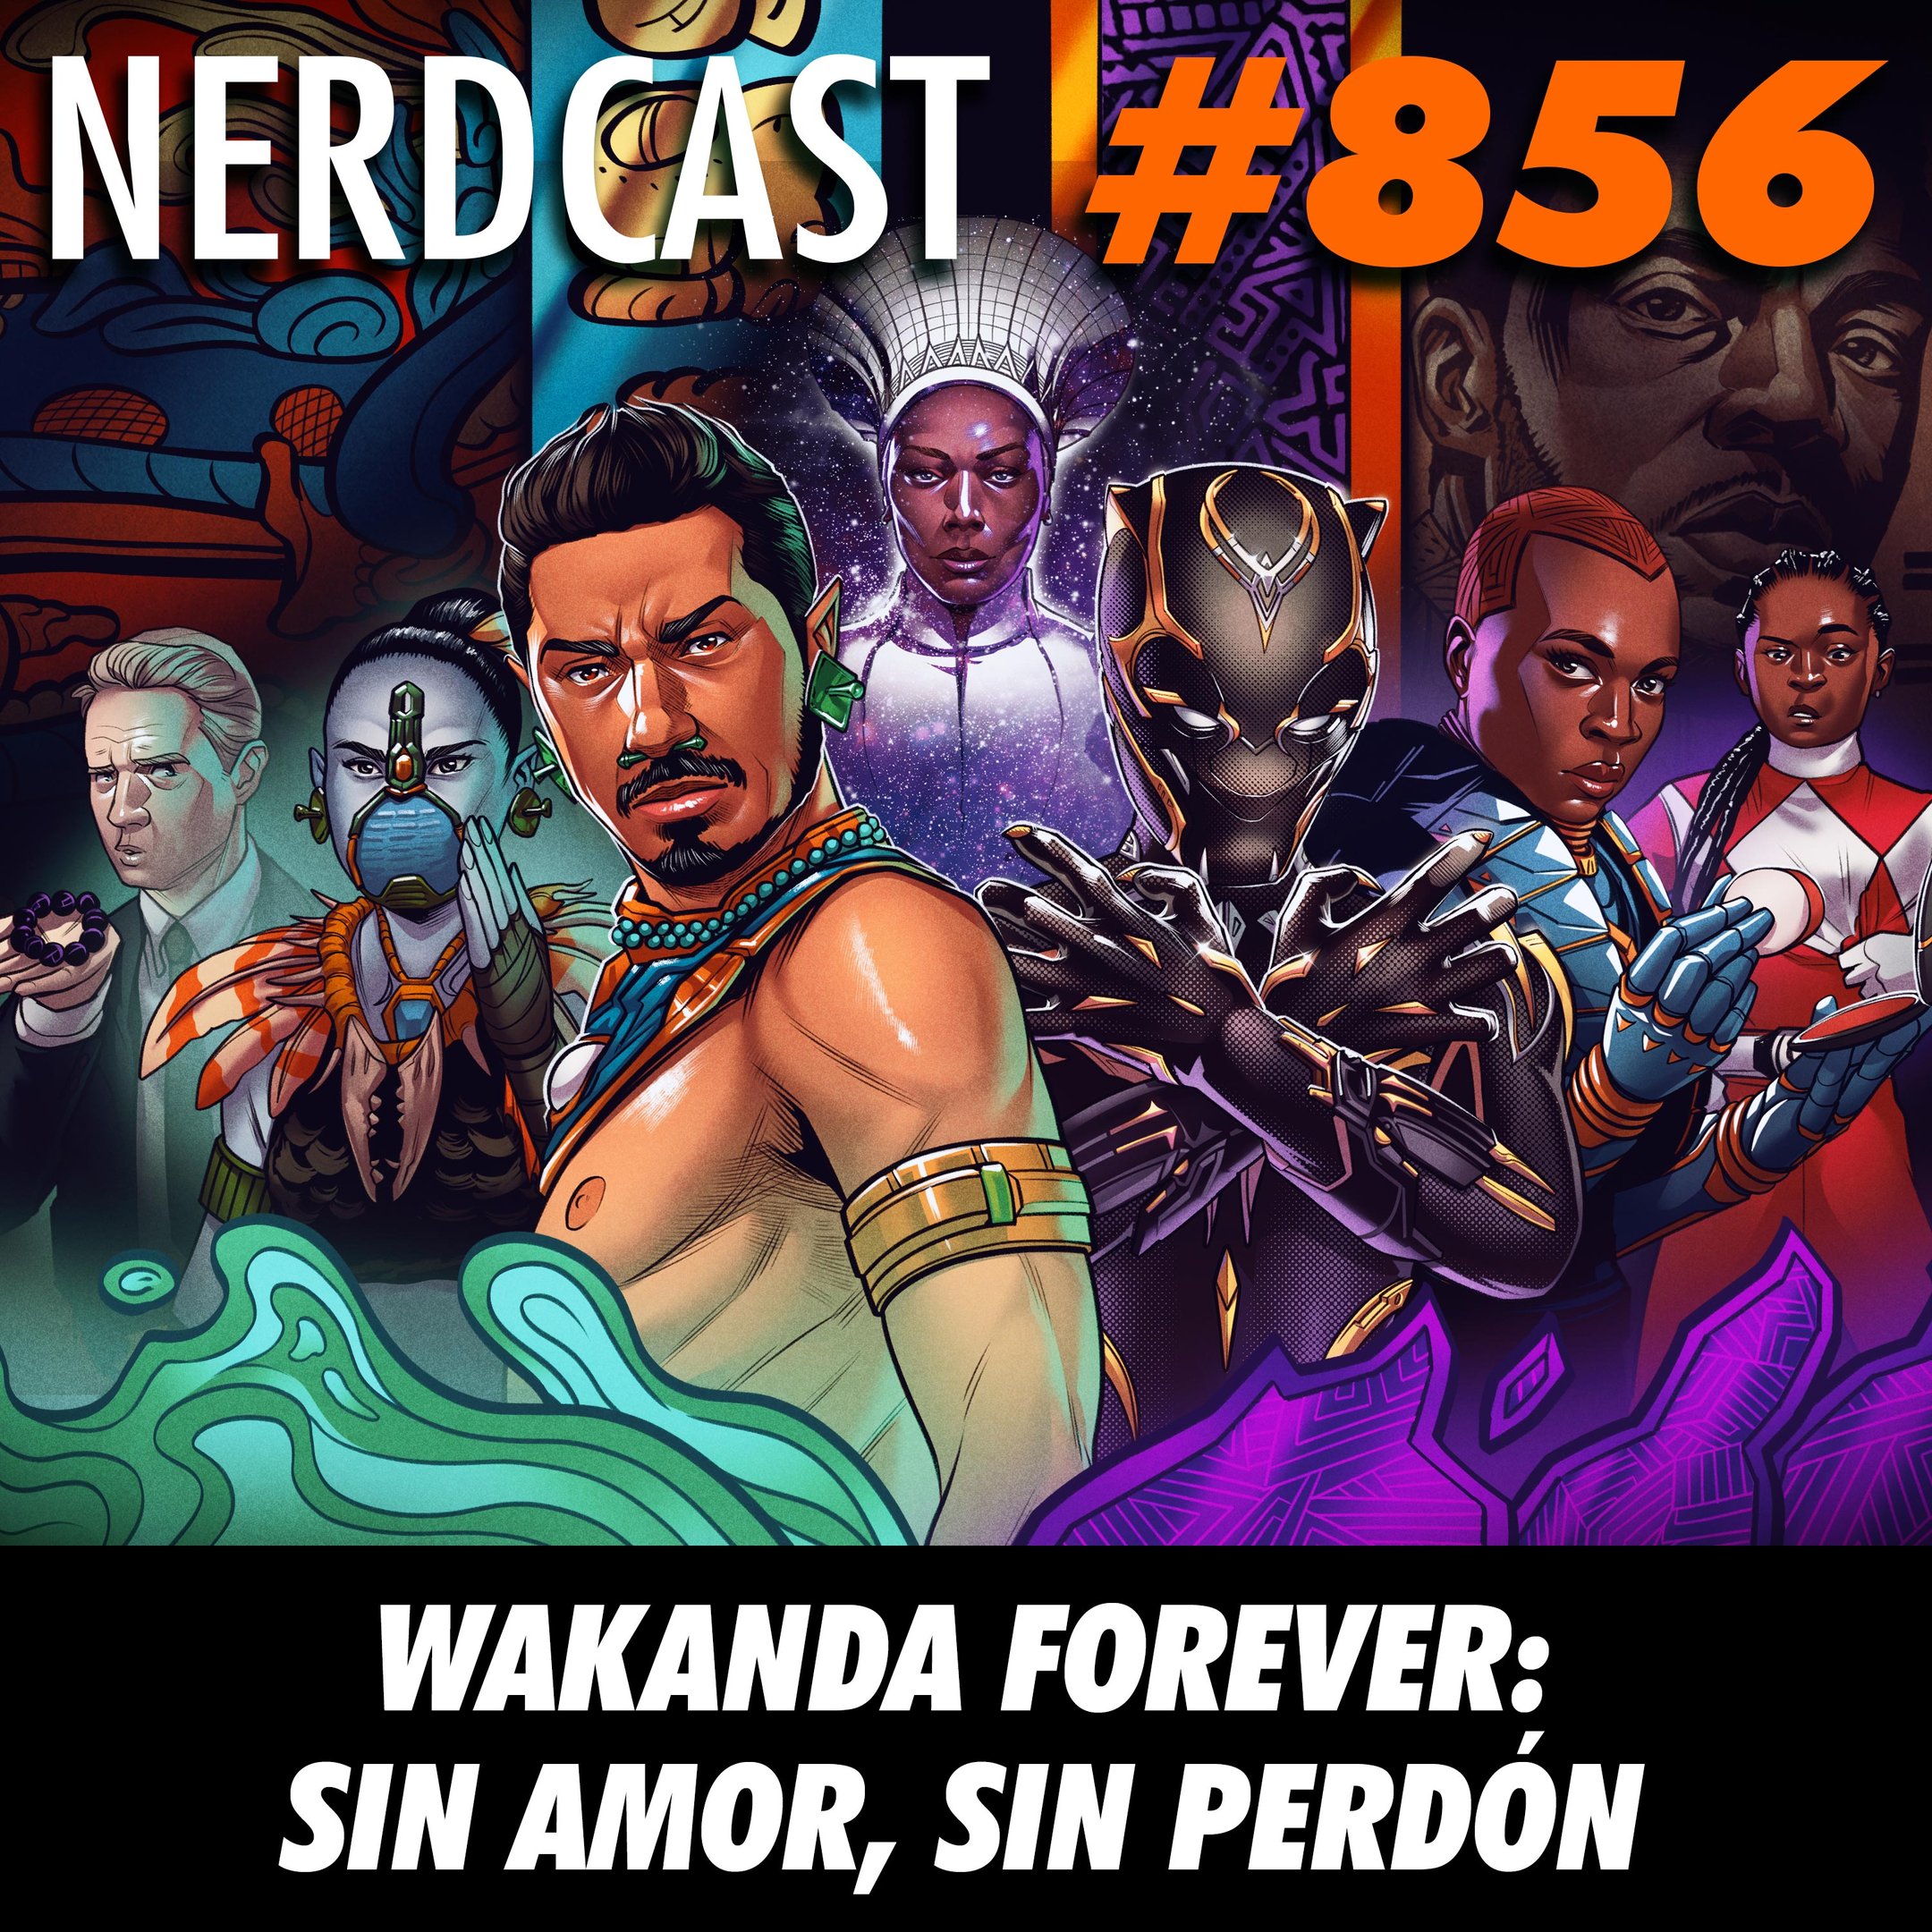 NerdCast 856 - Wakanda Forever: Sin amor, sin perdón